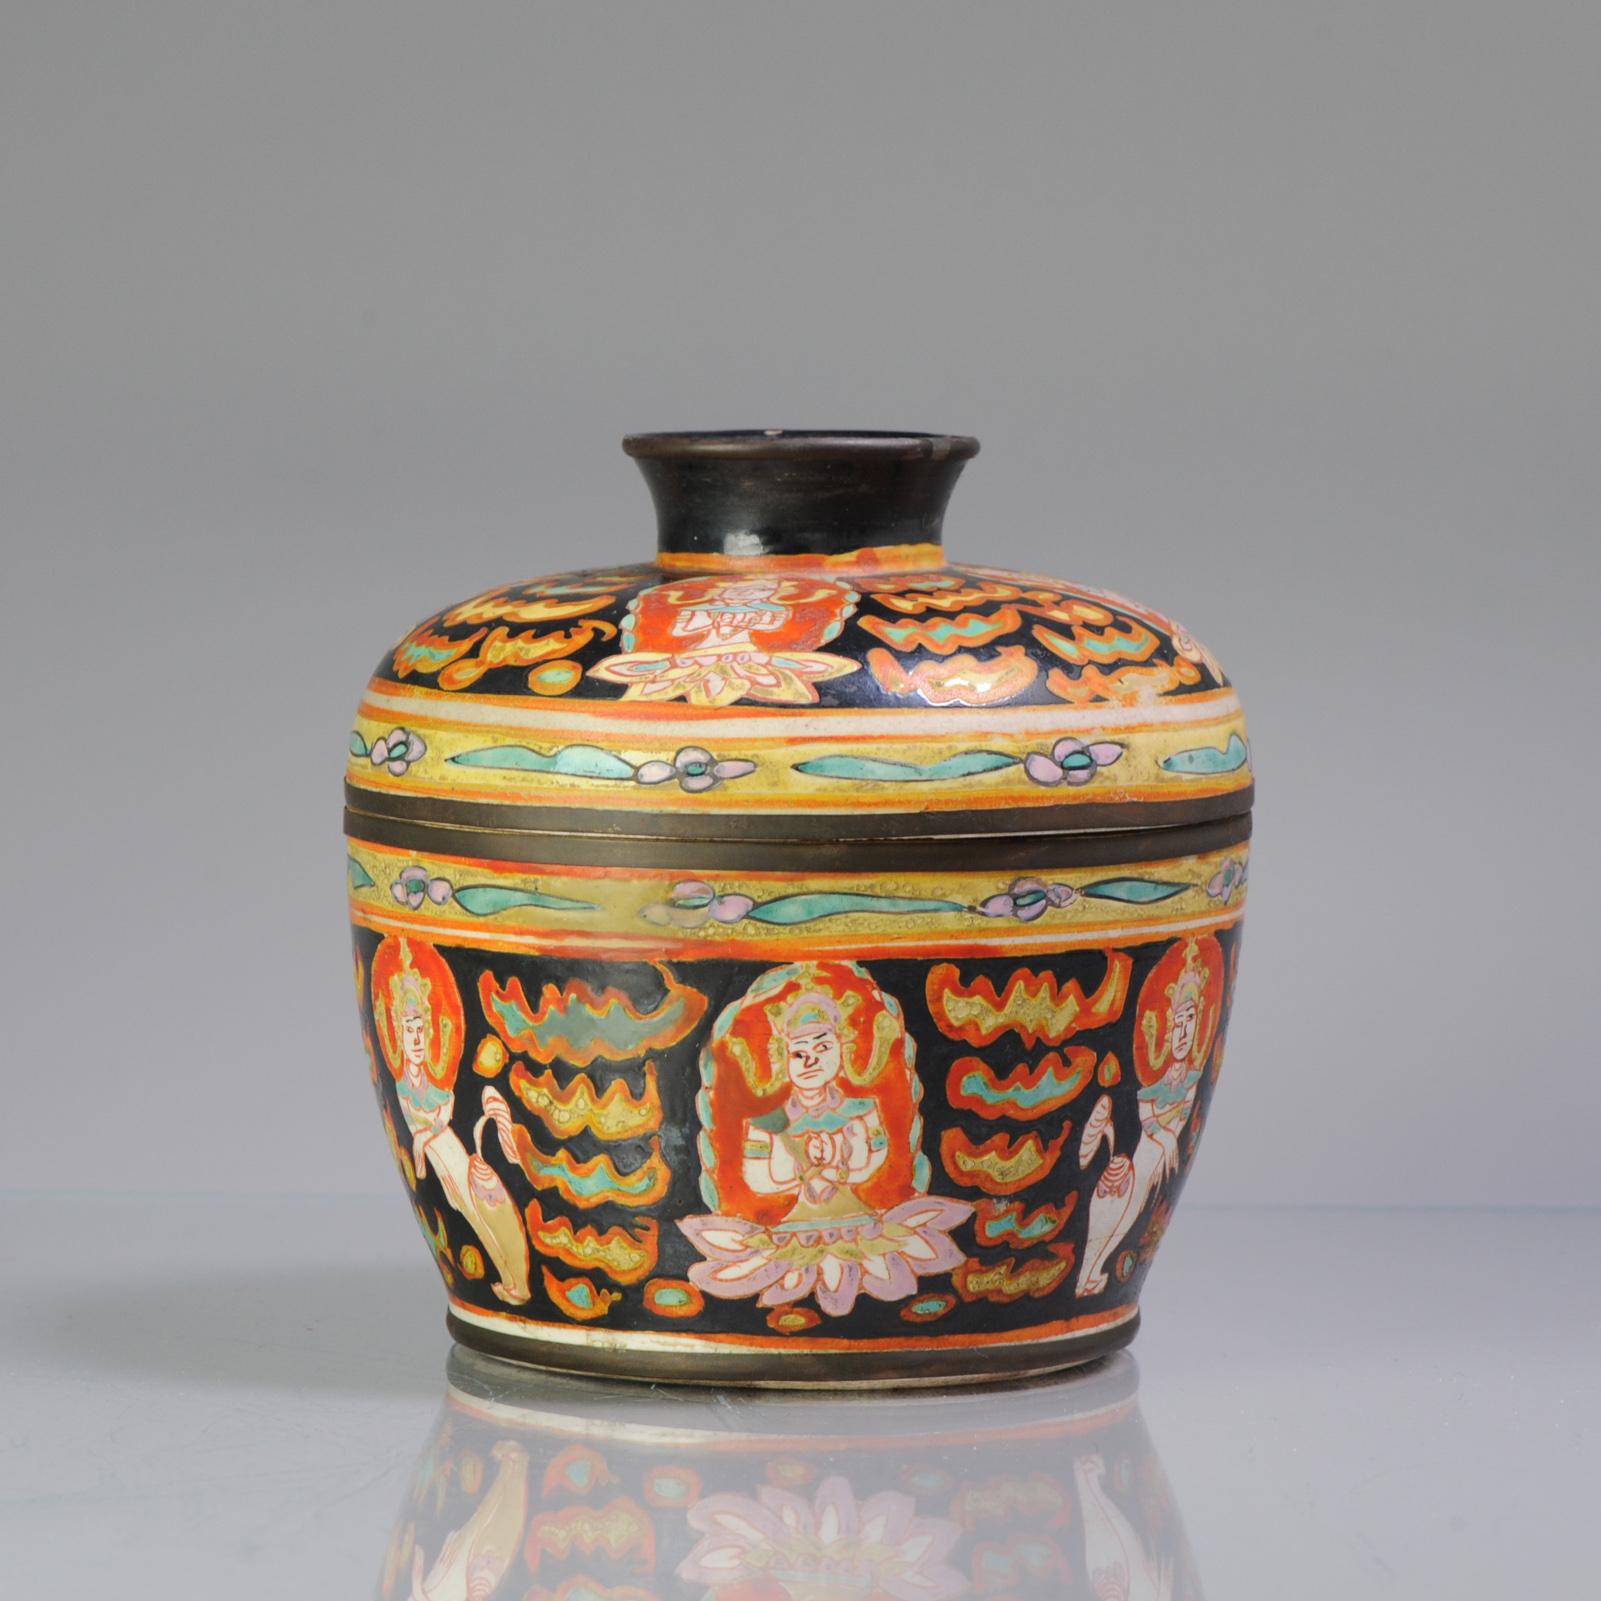 Antique Ca 1900 Chinese Porcelain Lidded Jar Bencharong Thailand Enamels 3